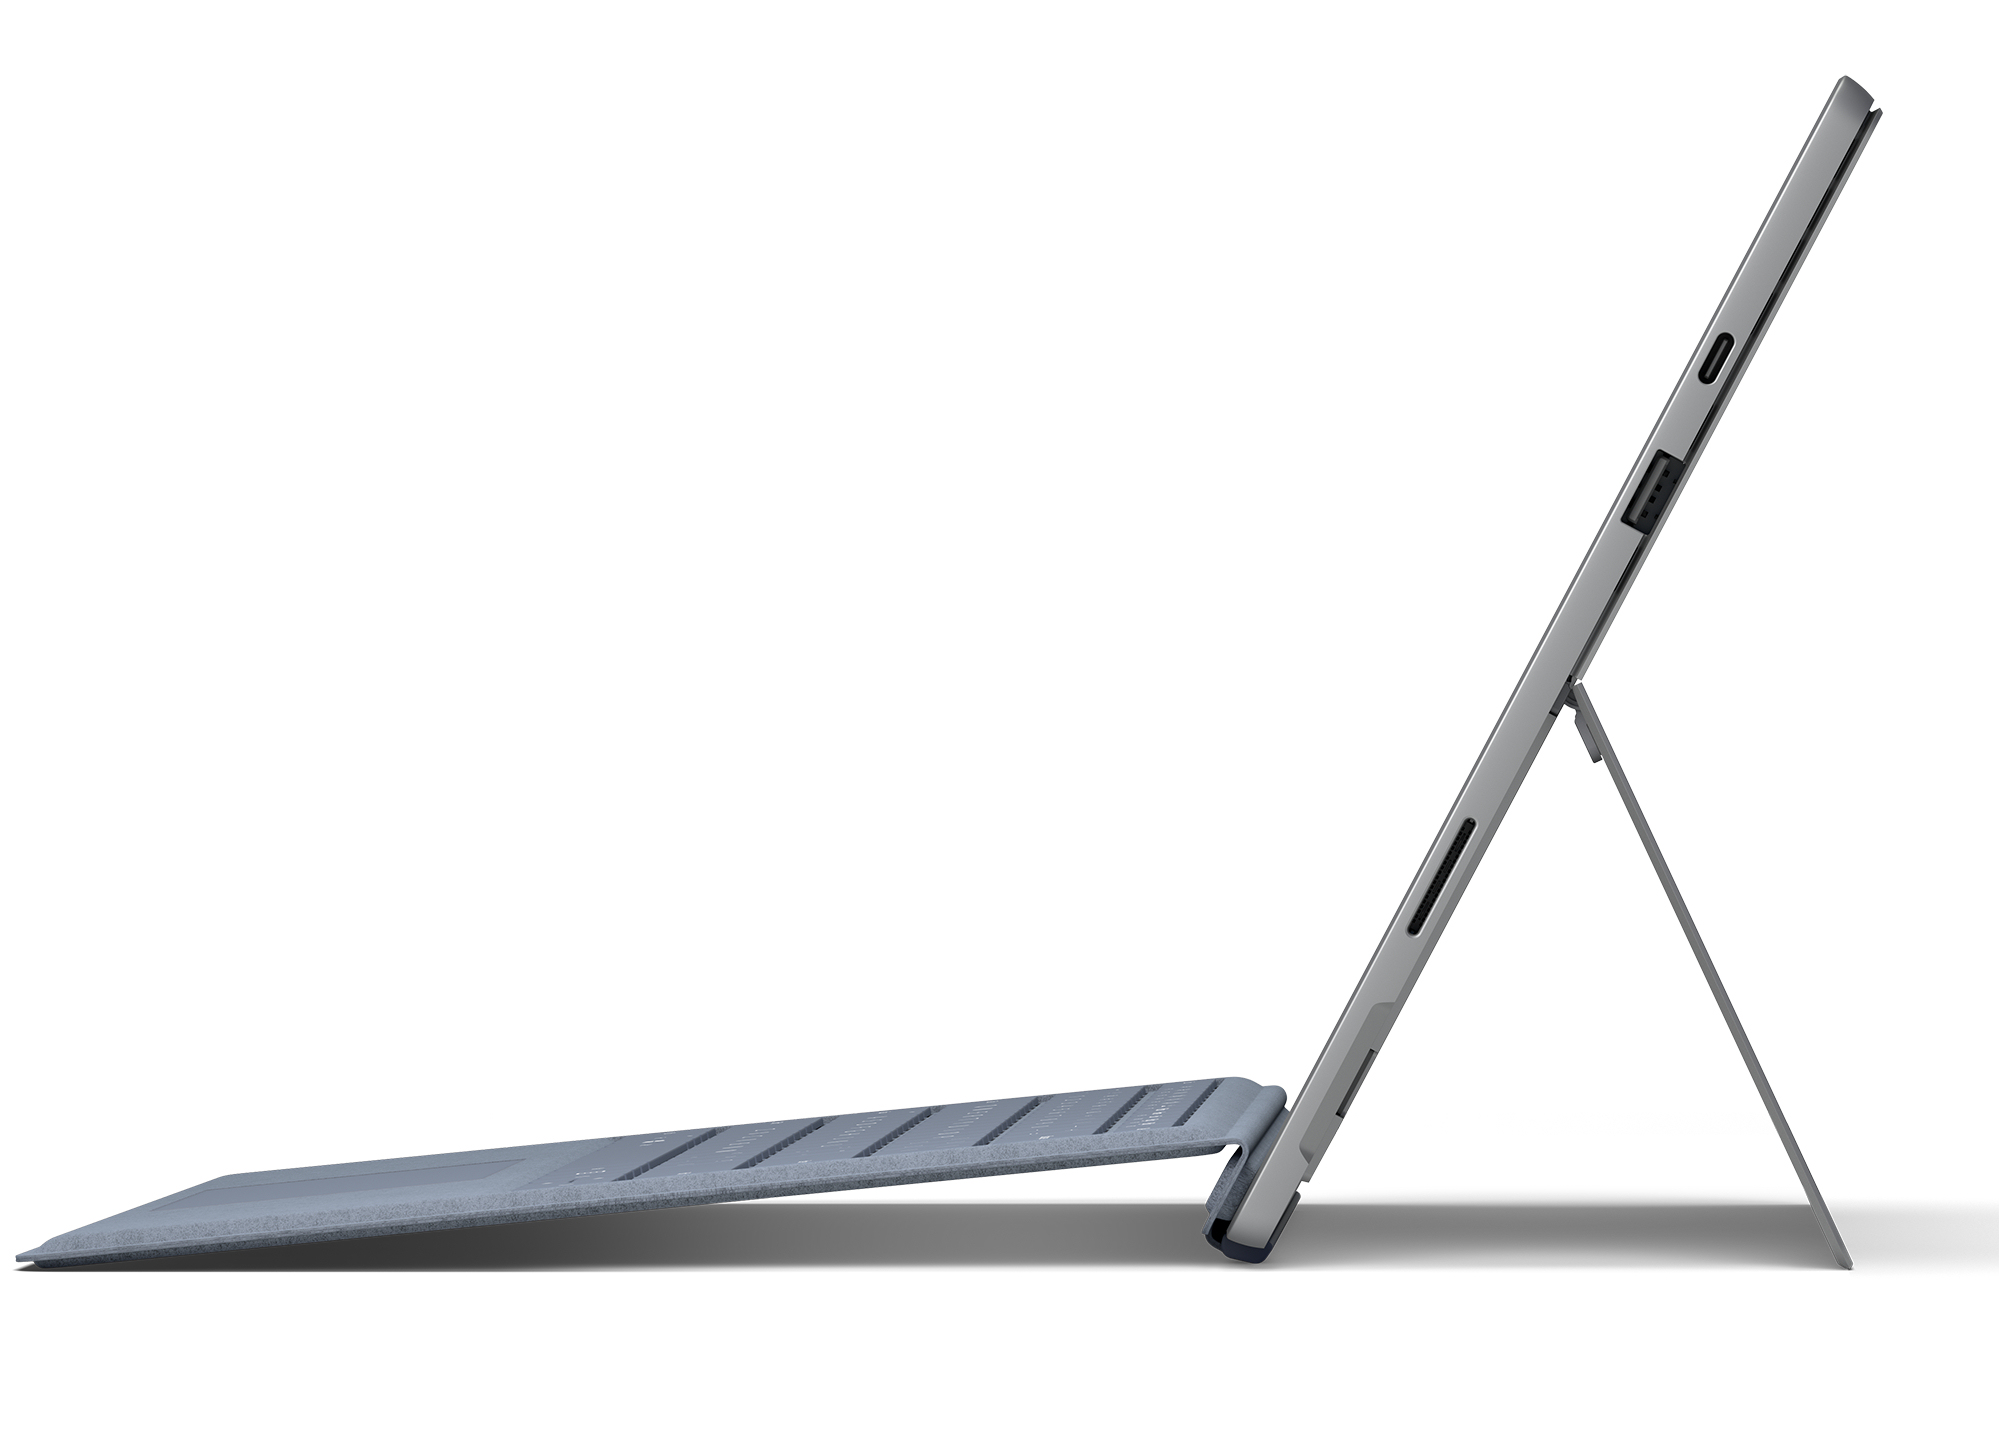 Surface Pro 7 pas cher